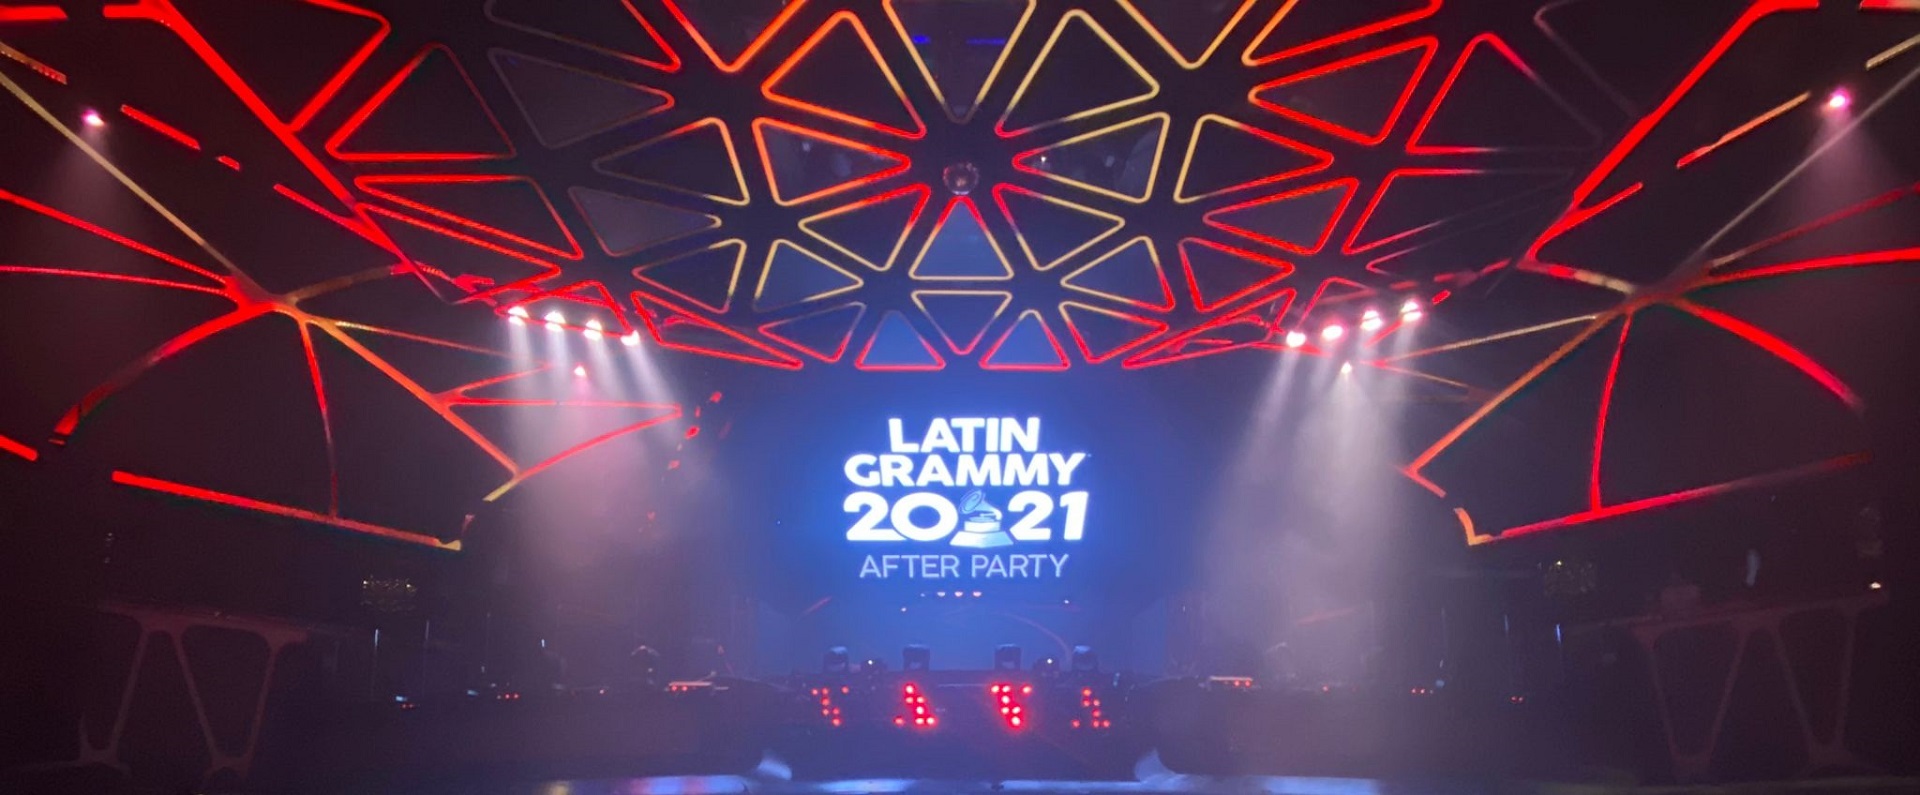 Latin Grammy 2021 estos son los ganadores